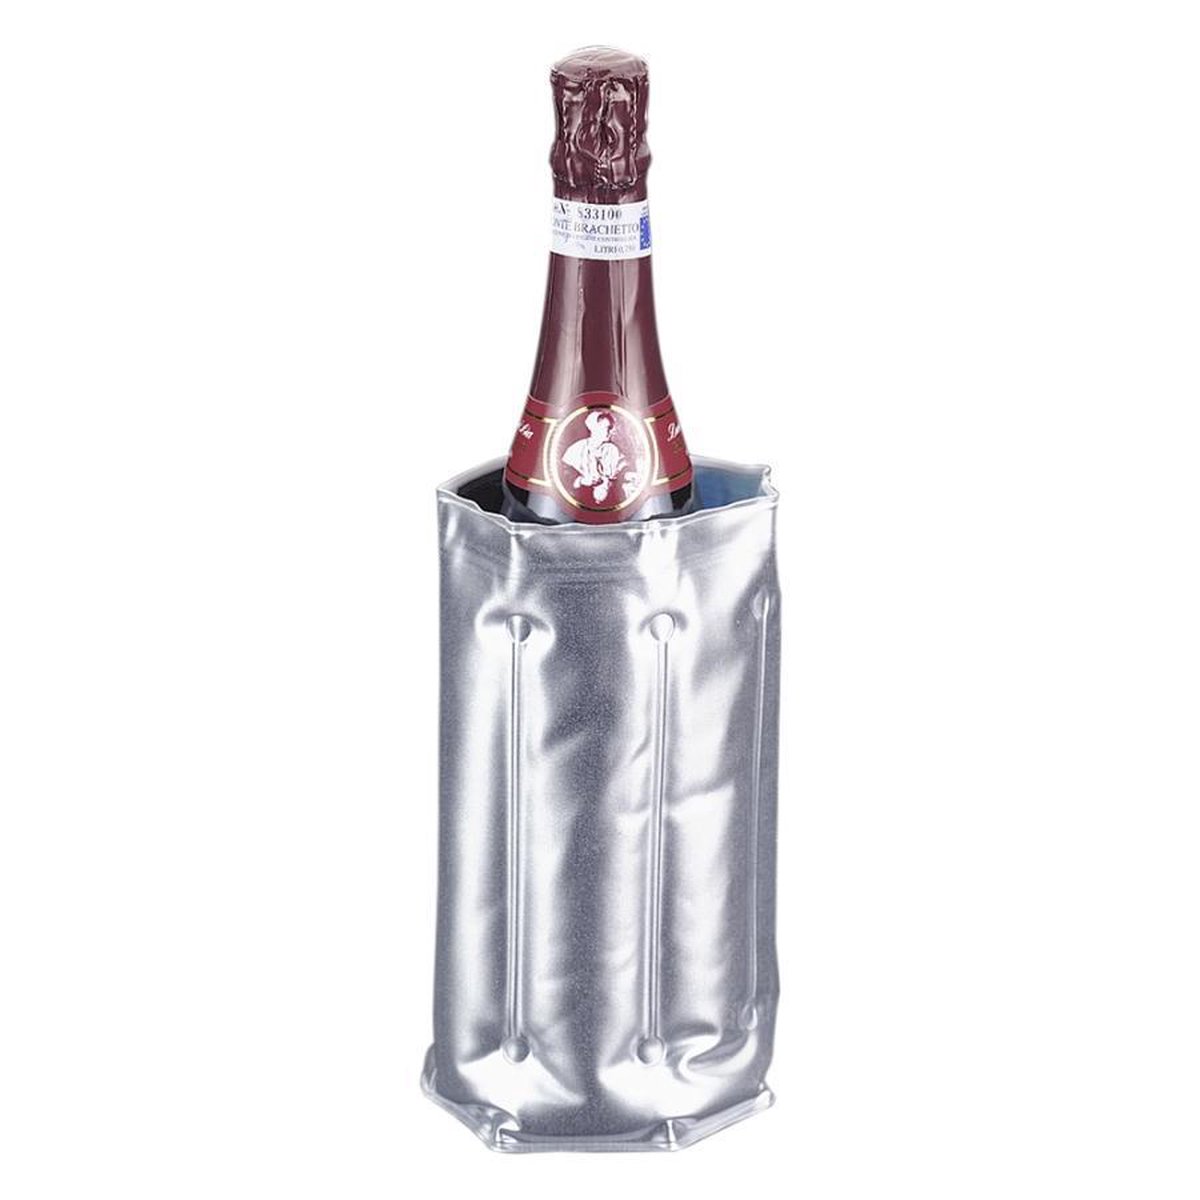 Metaltex - Fleskoeler - Flexibel - Maat aan te passen aan fles - tot 2 liter grote flessen